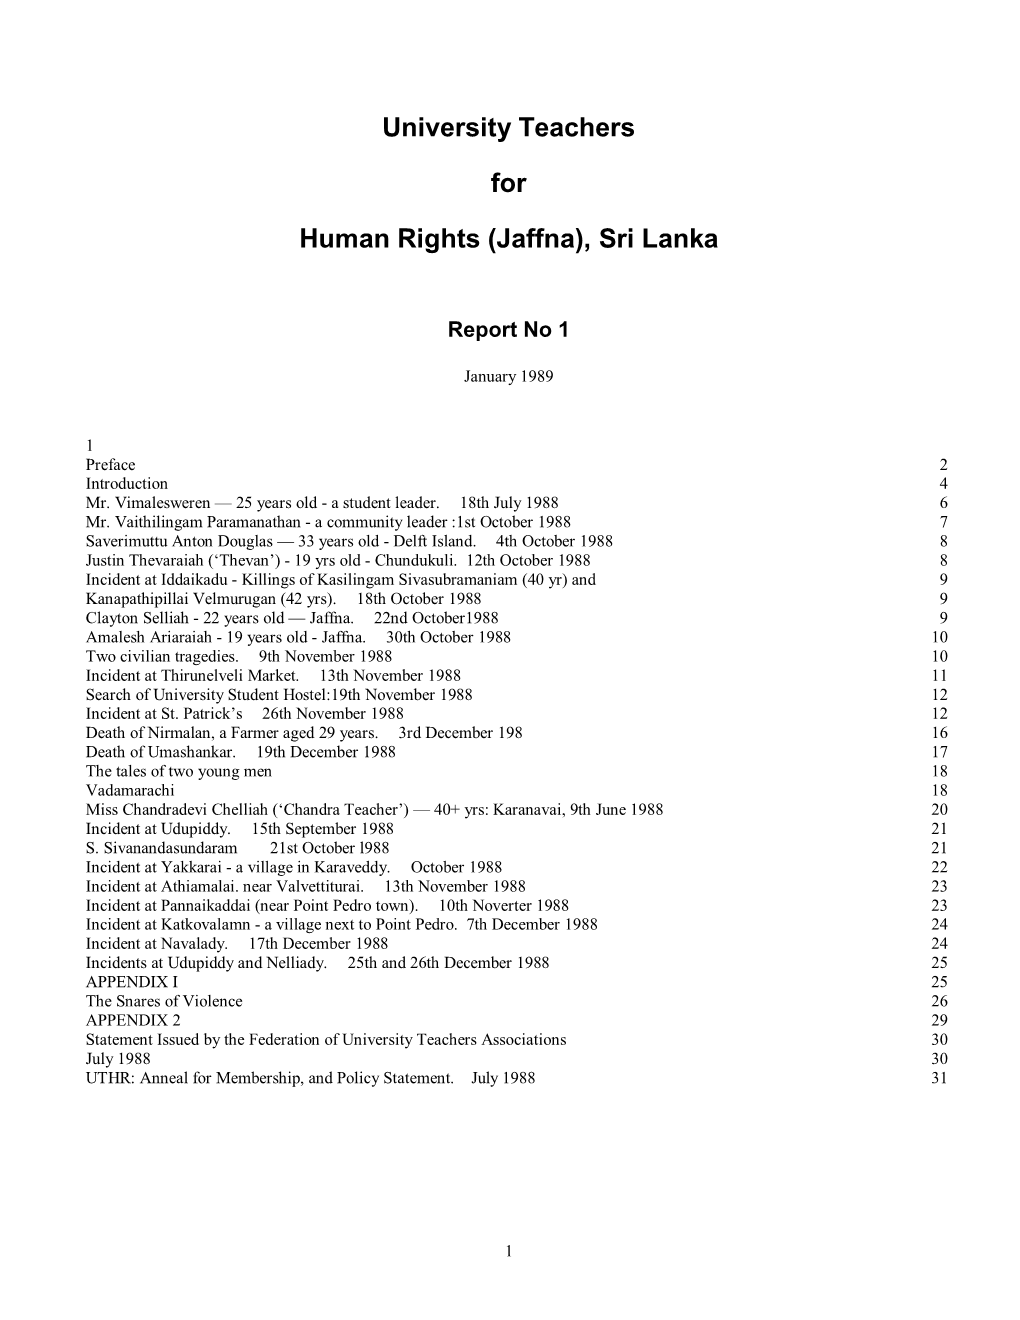 University Teachers for Human Rights (Jaffna), Sri Lanka